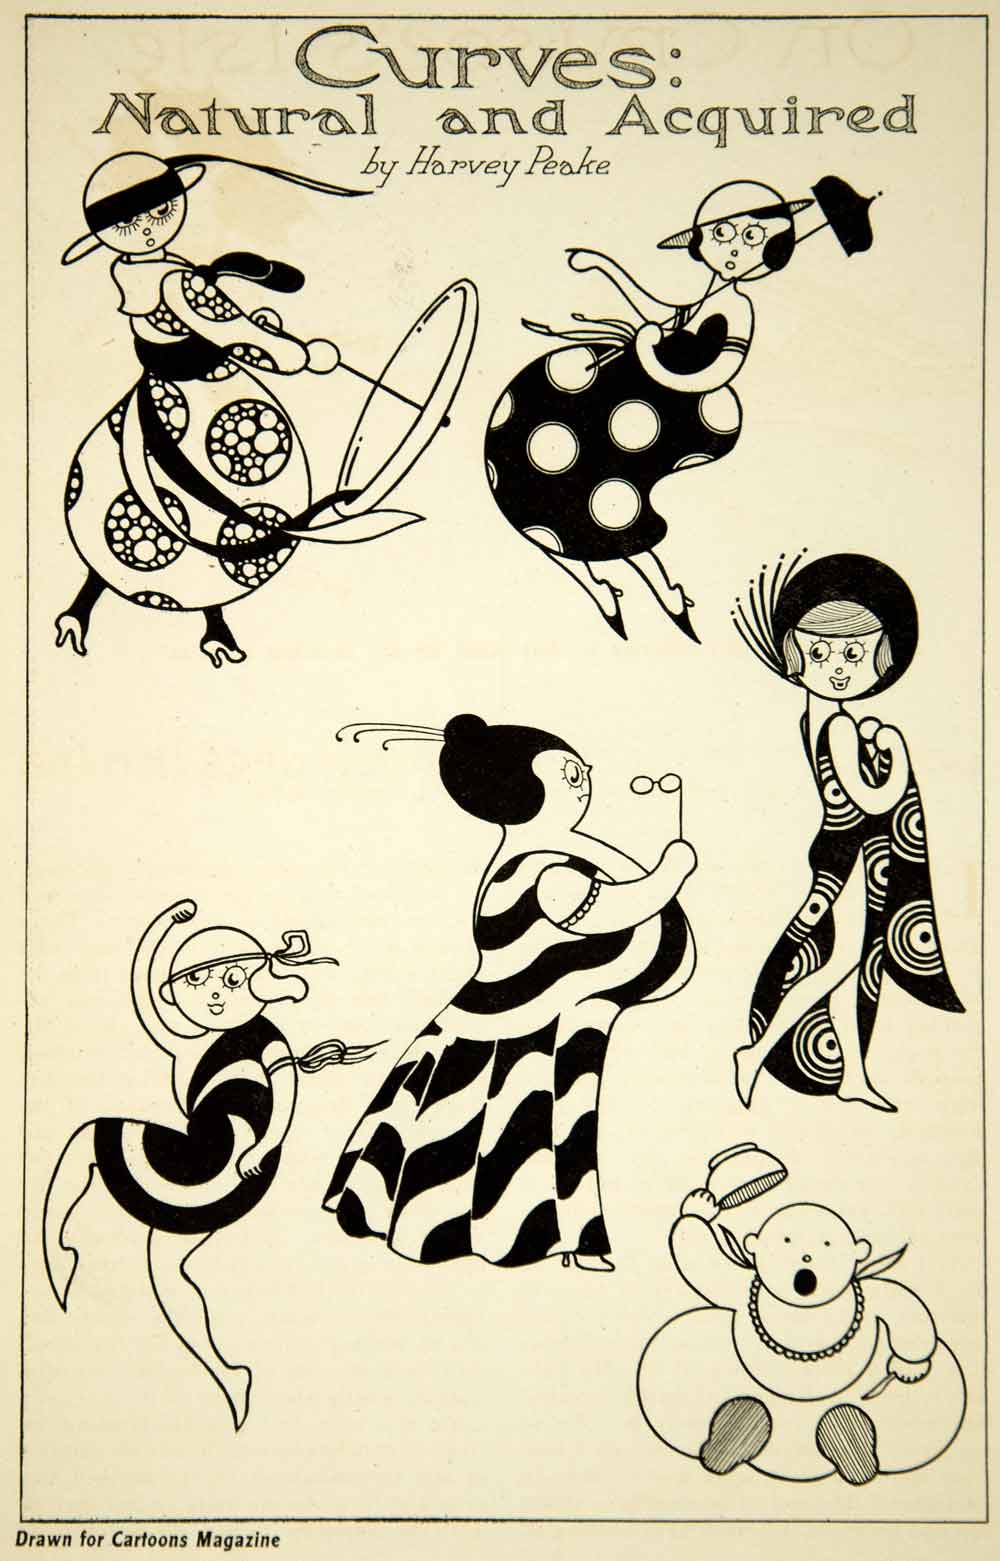 1917 Print Harvey Peake Cartoon Art Caricature Women Fashion Curves Cartoonist